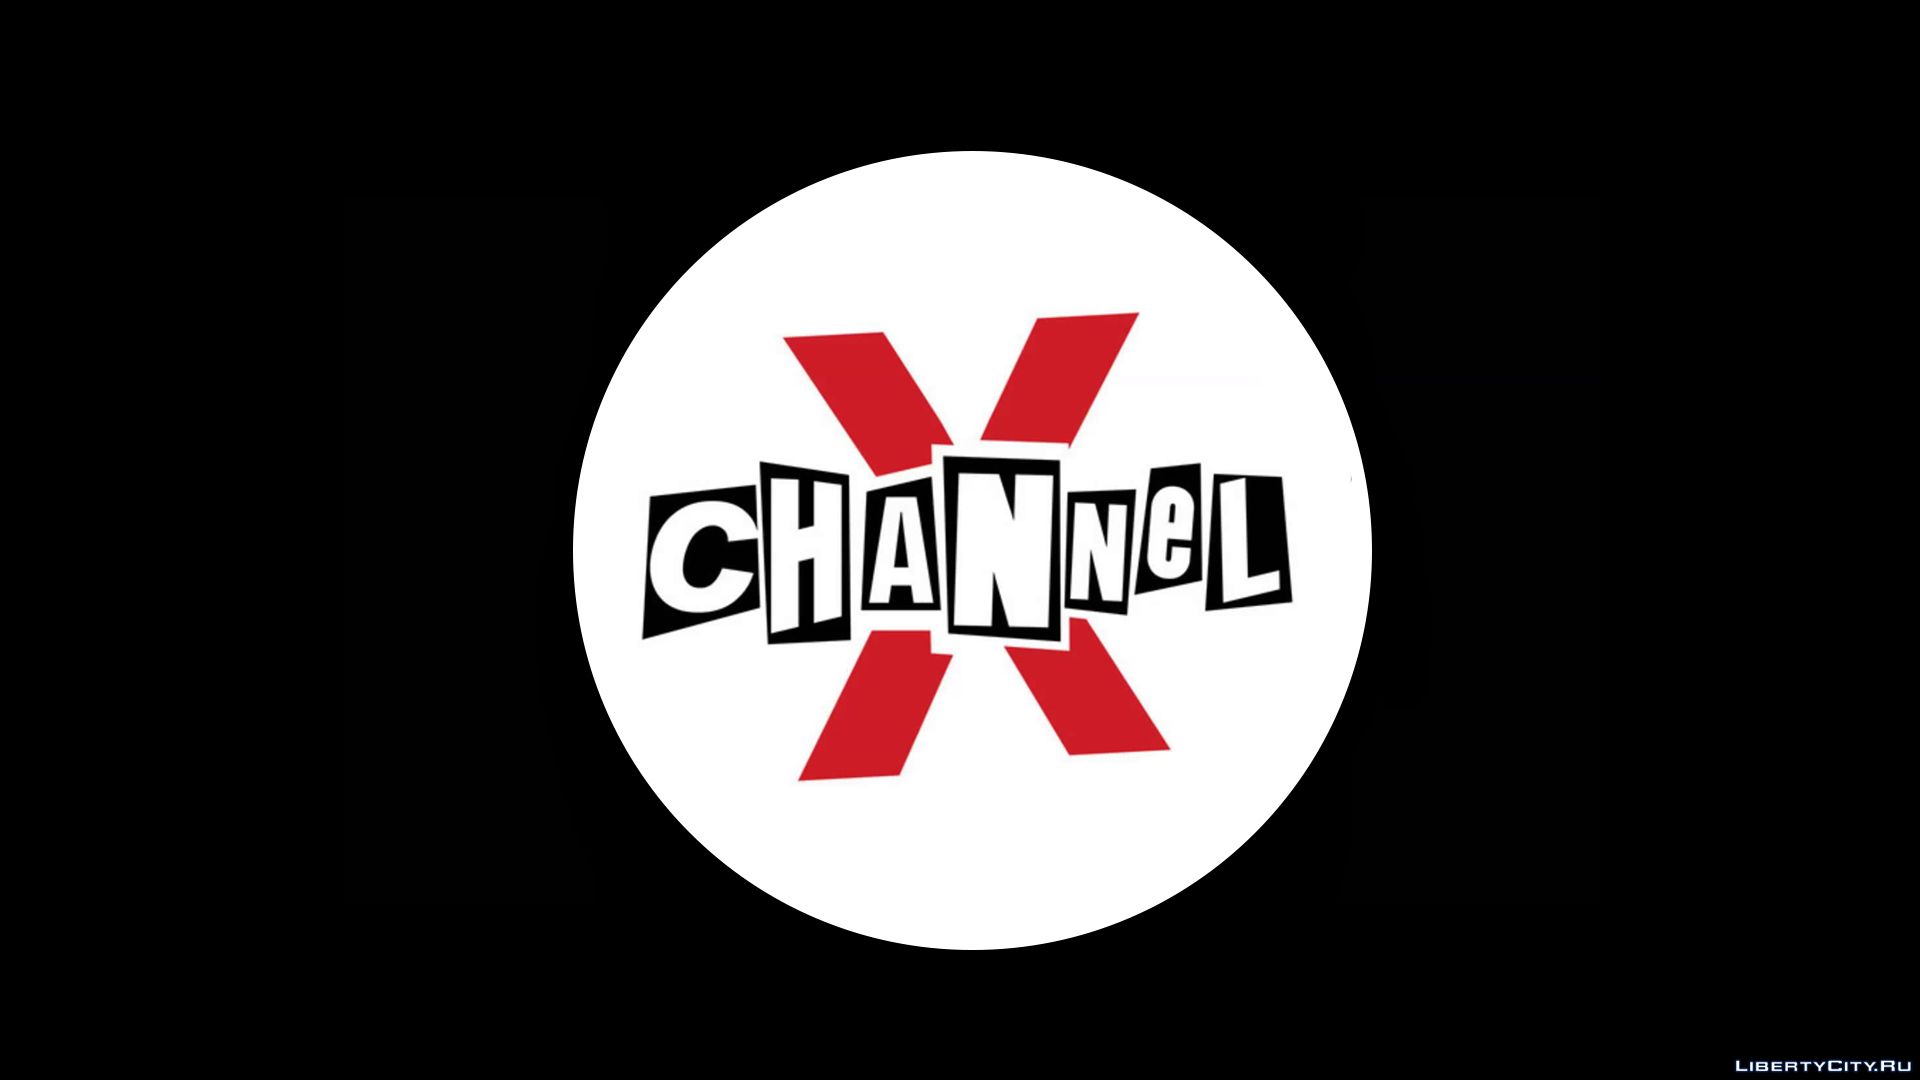 Channel x gta 5 песни фото 2